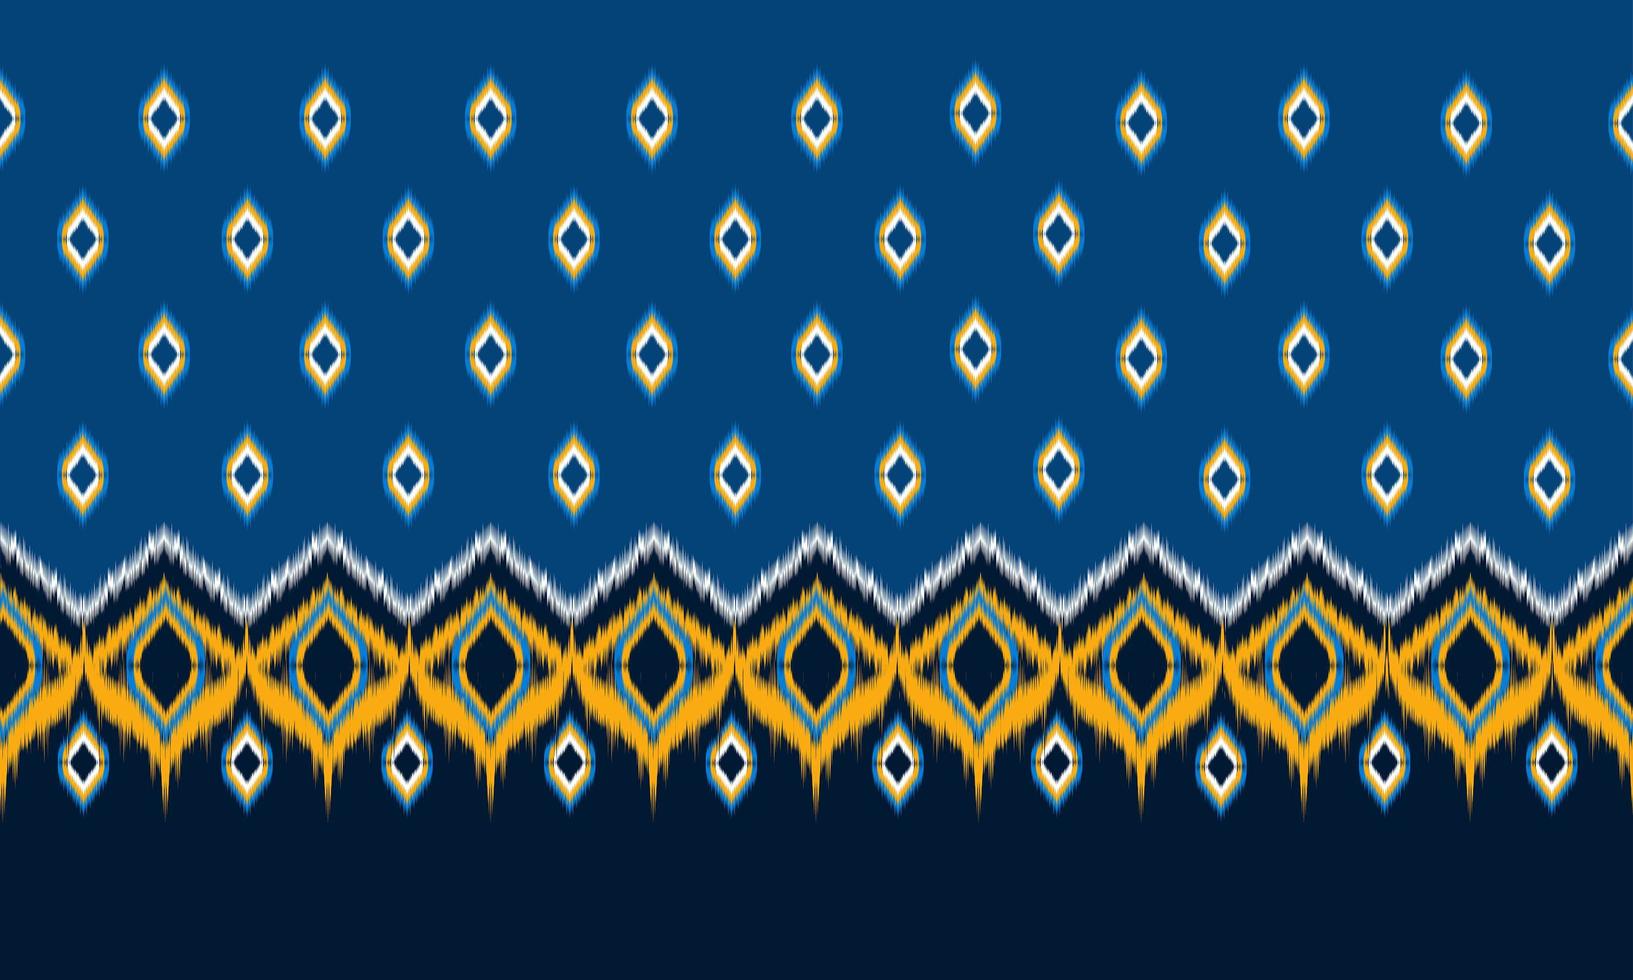 abstrakt etnisk ikat chevron mönster bakgrund. ,matta,tapeter,kläder,omslag,batik,tyg,vektorillustration.broderistil. vektor